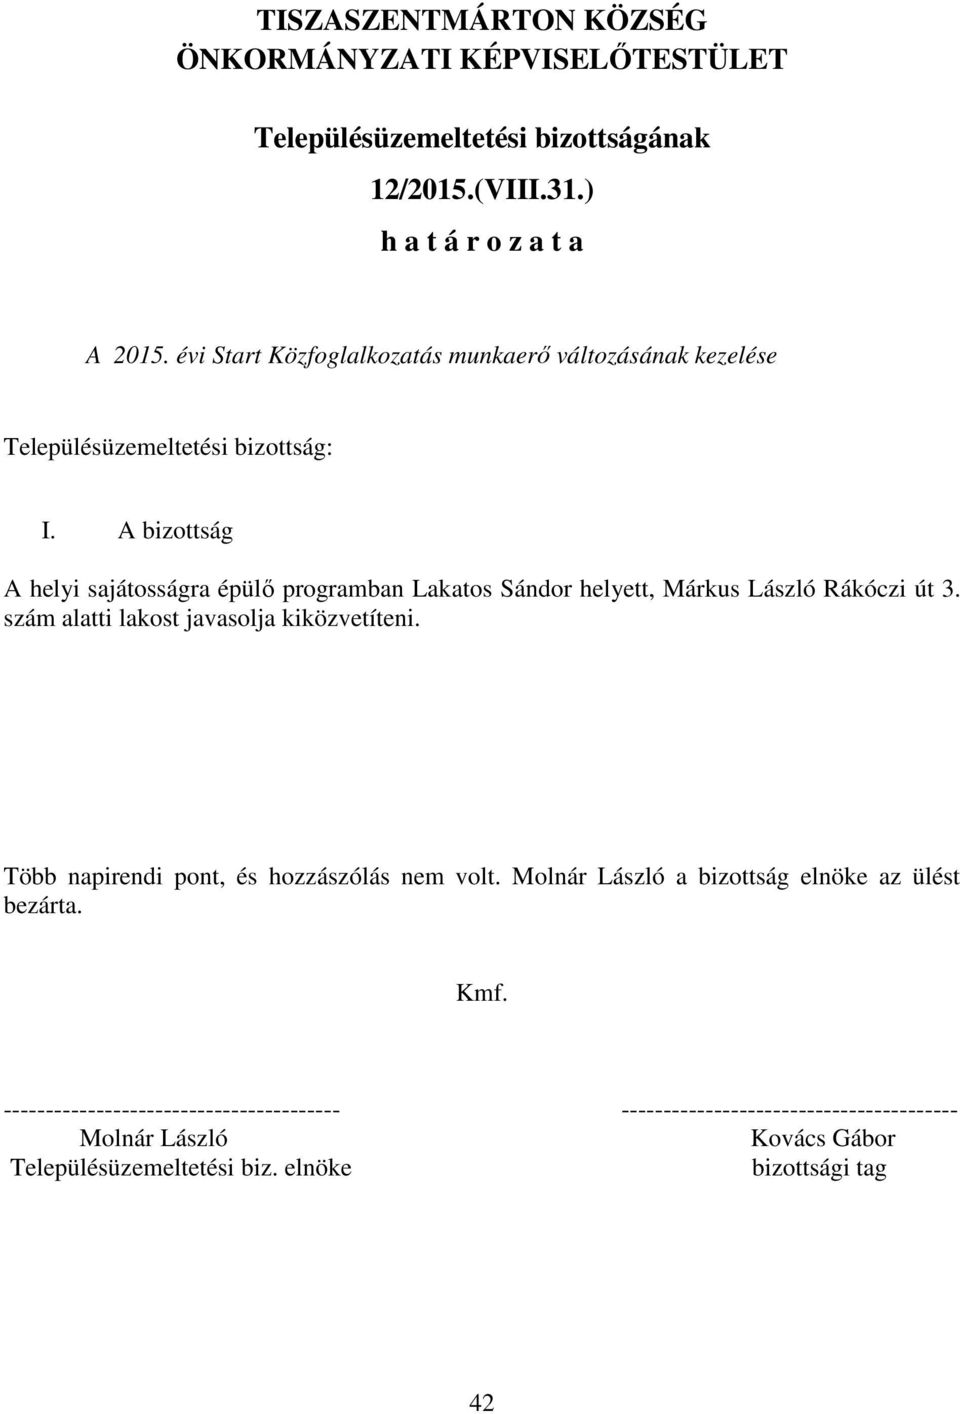 A bizottság A helyi sajátosságra épülő programban Lakatos Sándor helyett, Márkus László Rákóczi út 3. szám alatti lakost javasolja kiközvetíteni.